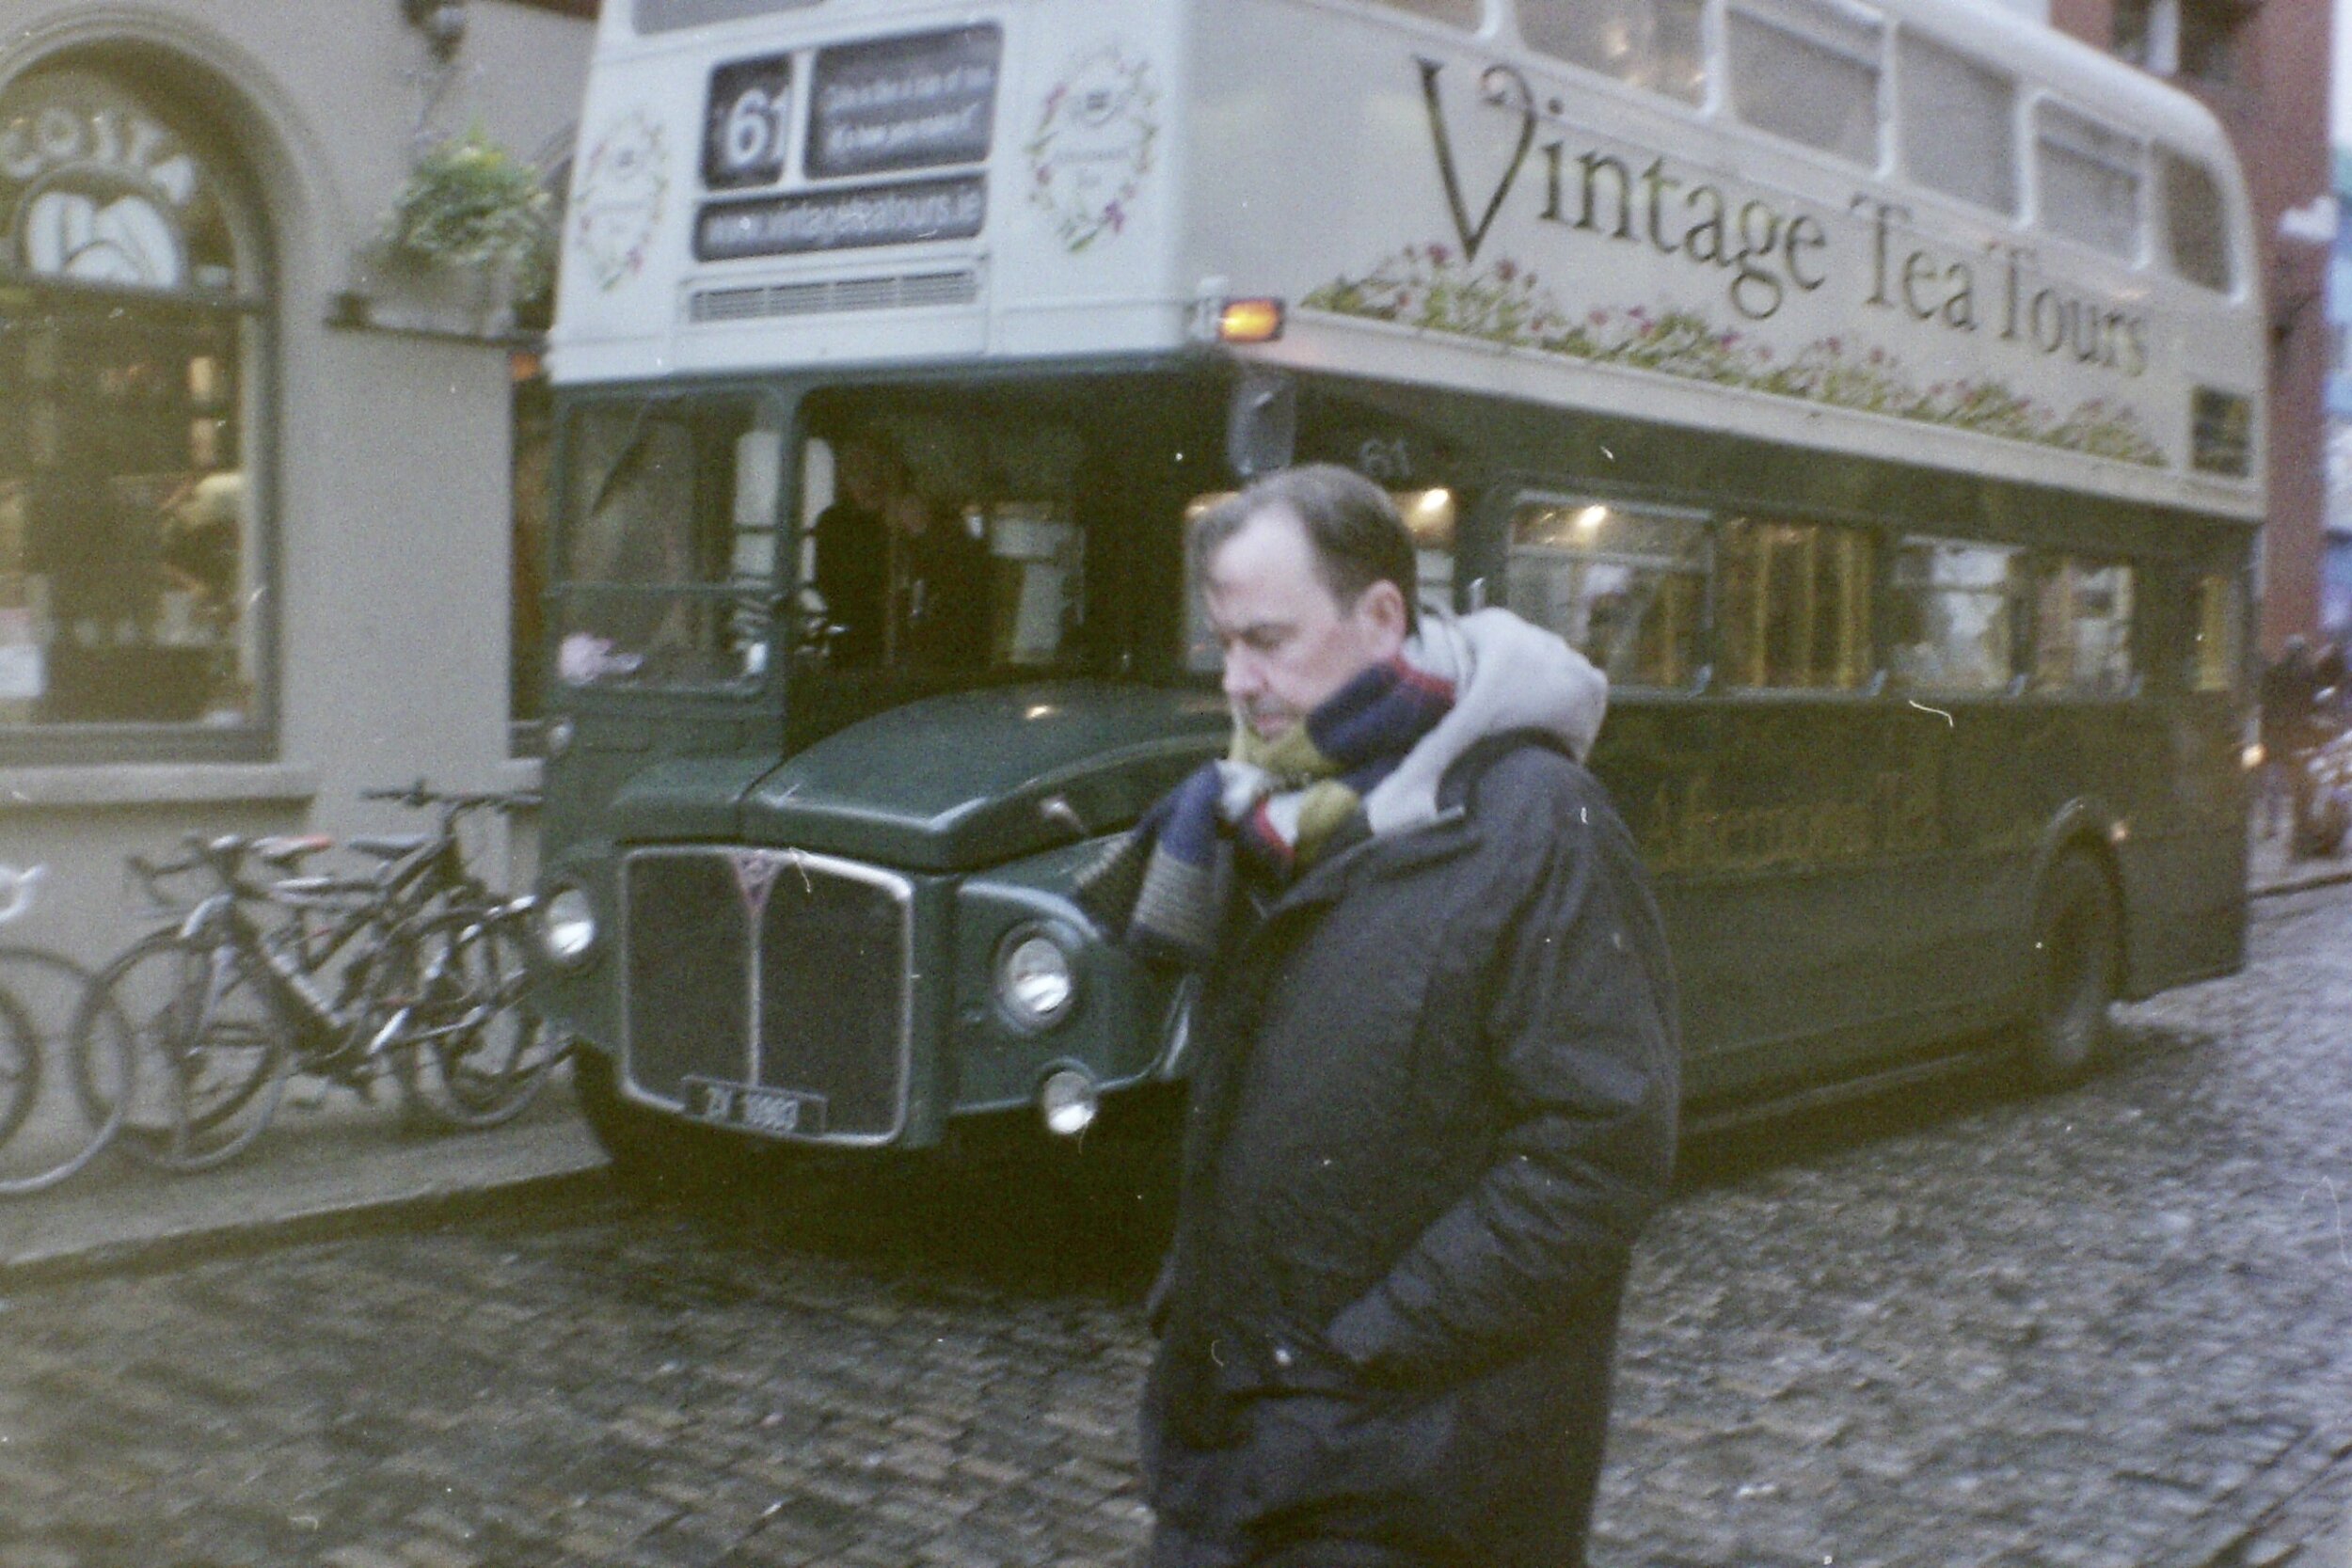 Vintage Tea Tours of Dublin 